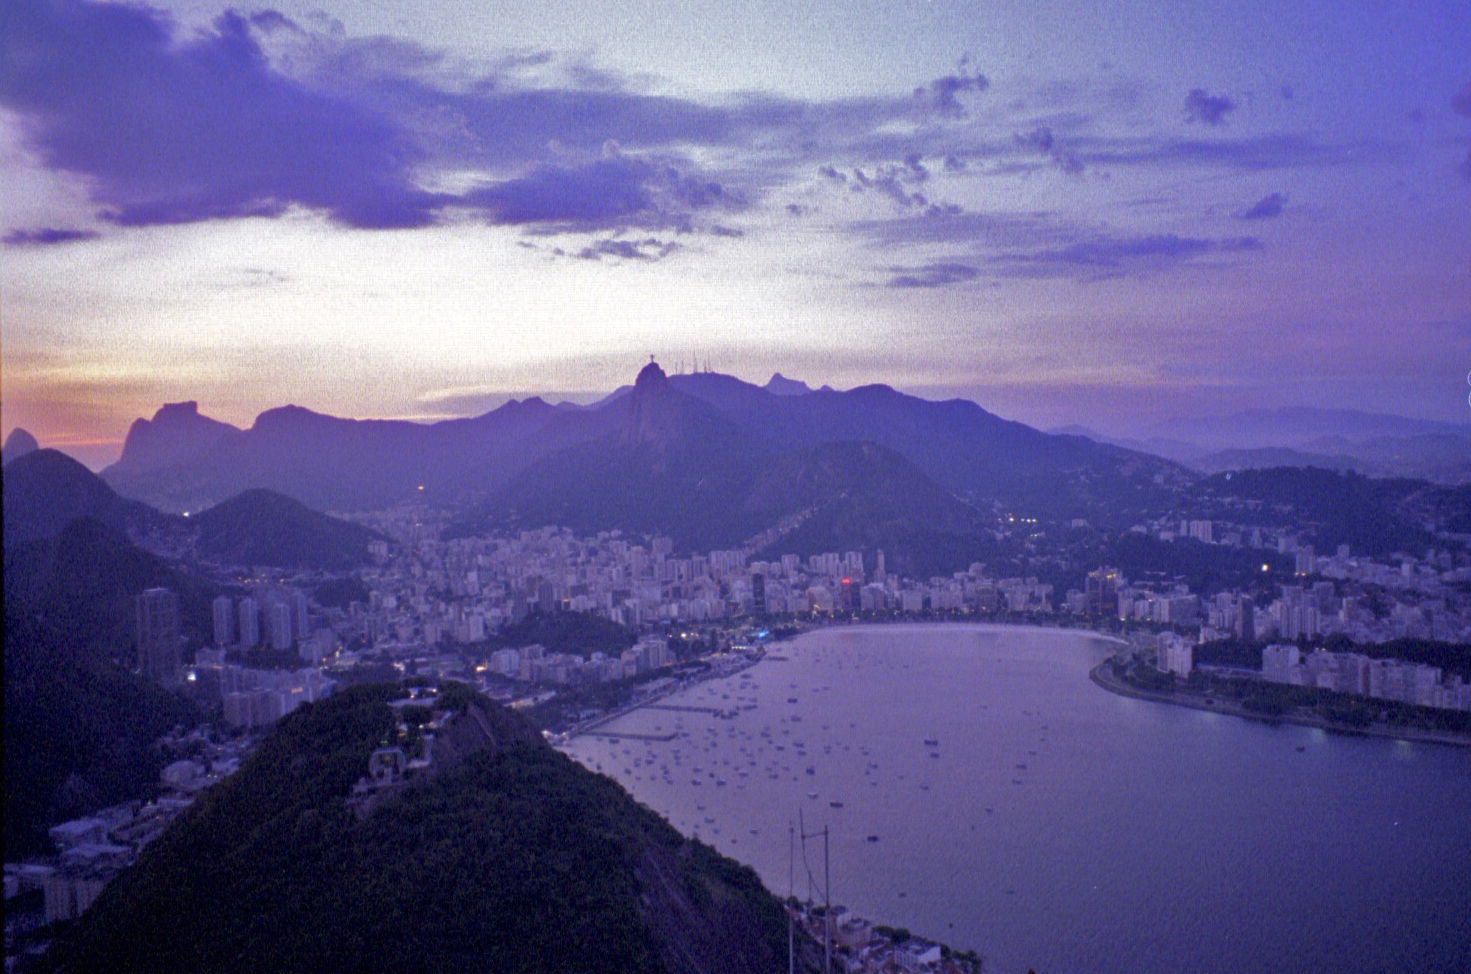 view from Pão de Açúcar, Rio de Janeiro (note: this image is not suitable for large prints)